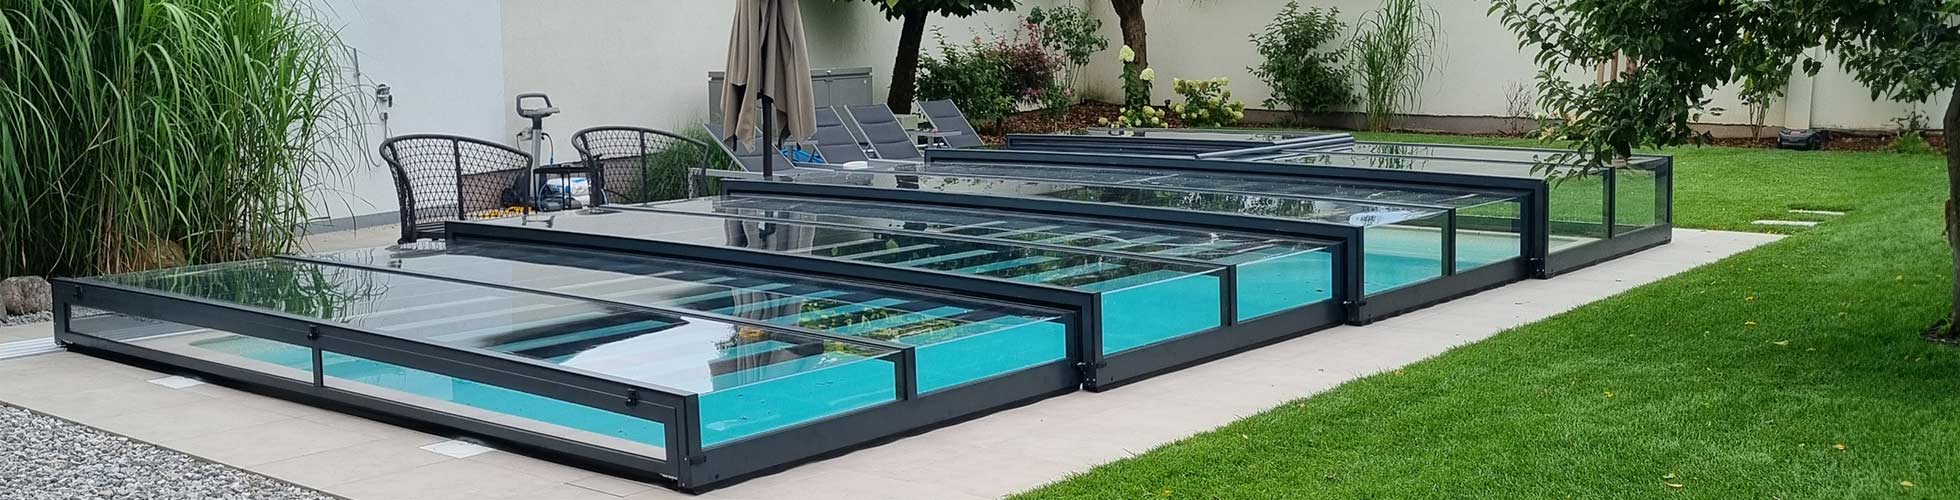 Pool mit Poolüberdachung - errichtet von Poolbau Eckschlager in Salzburg, Energieeinsparung für den Poolbesitzer